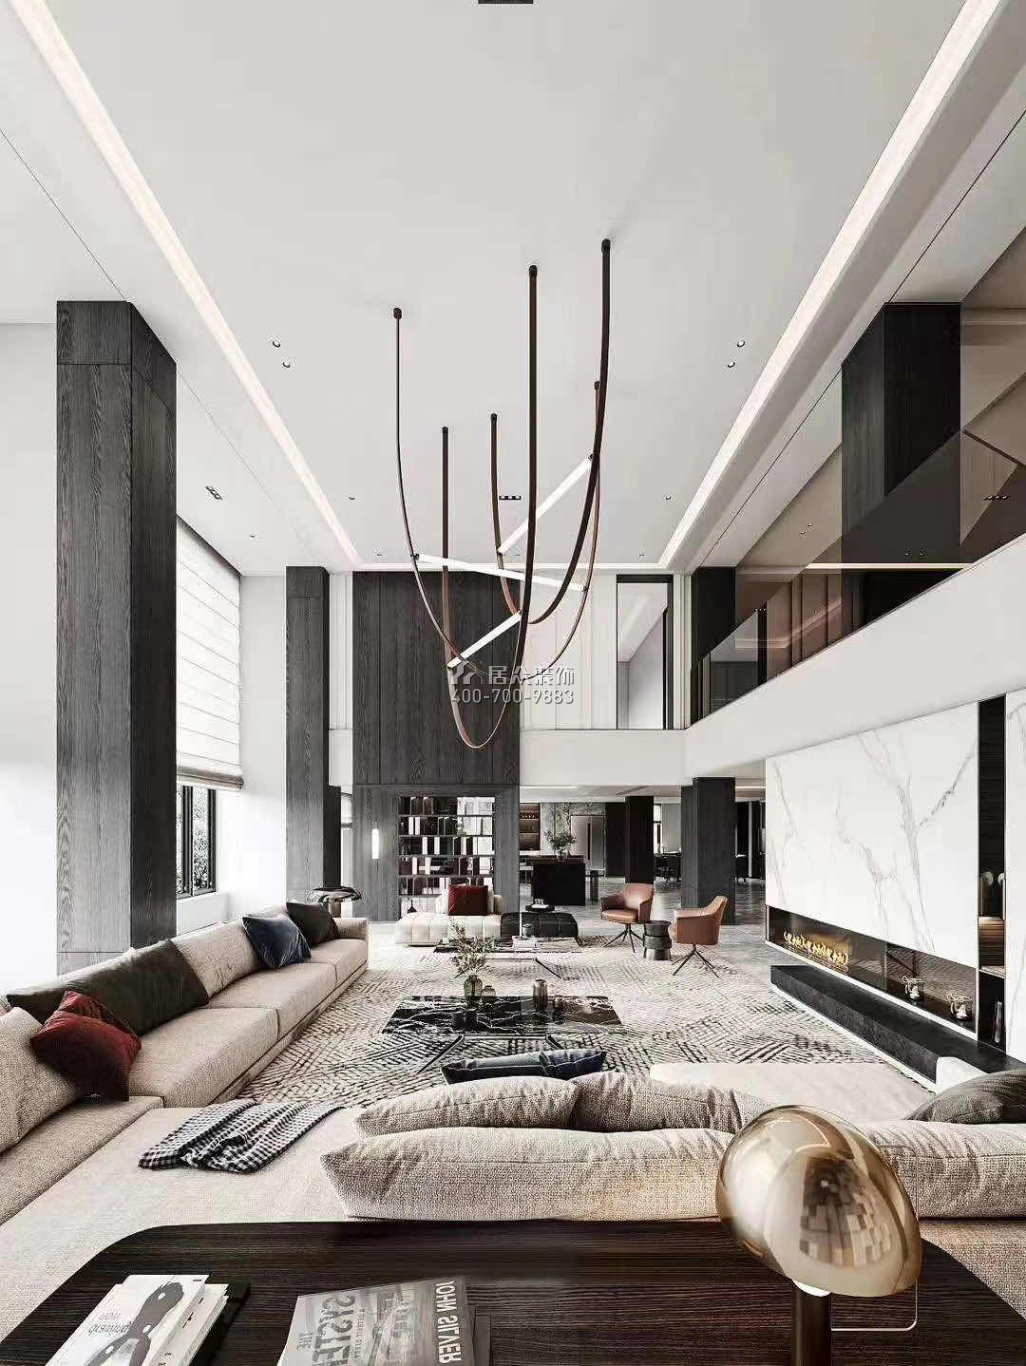 新天鹅堡560平方米现代简约风格别墅户型客厅装修效果图